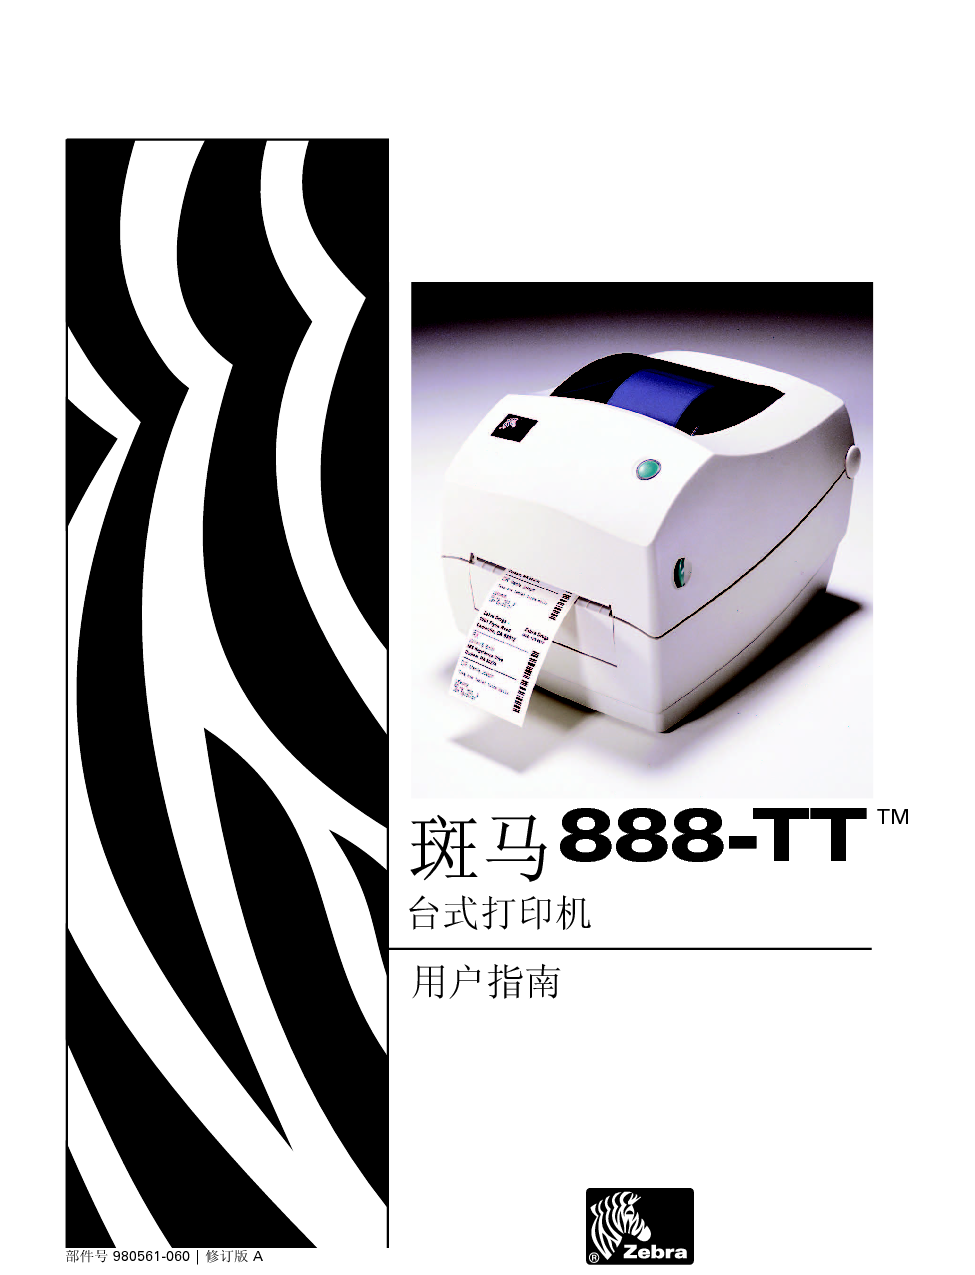 斑马 Zebra 888-TT 用户指南 封面